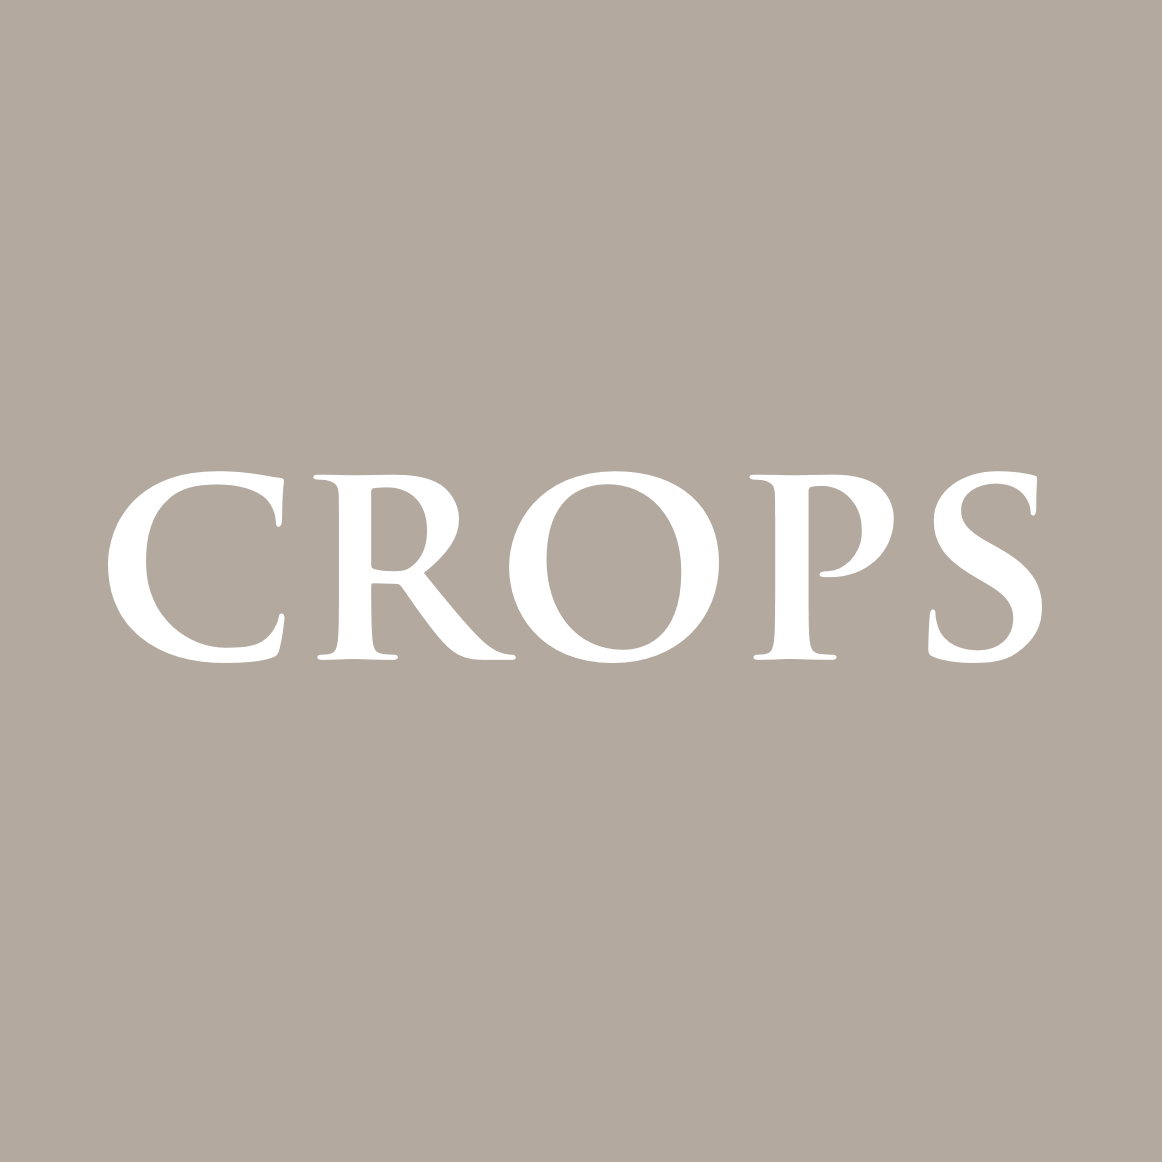 Crops M